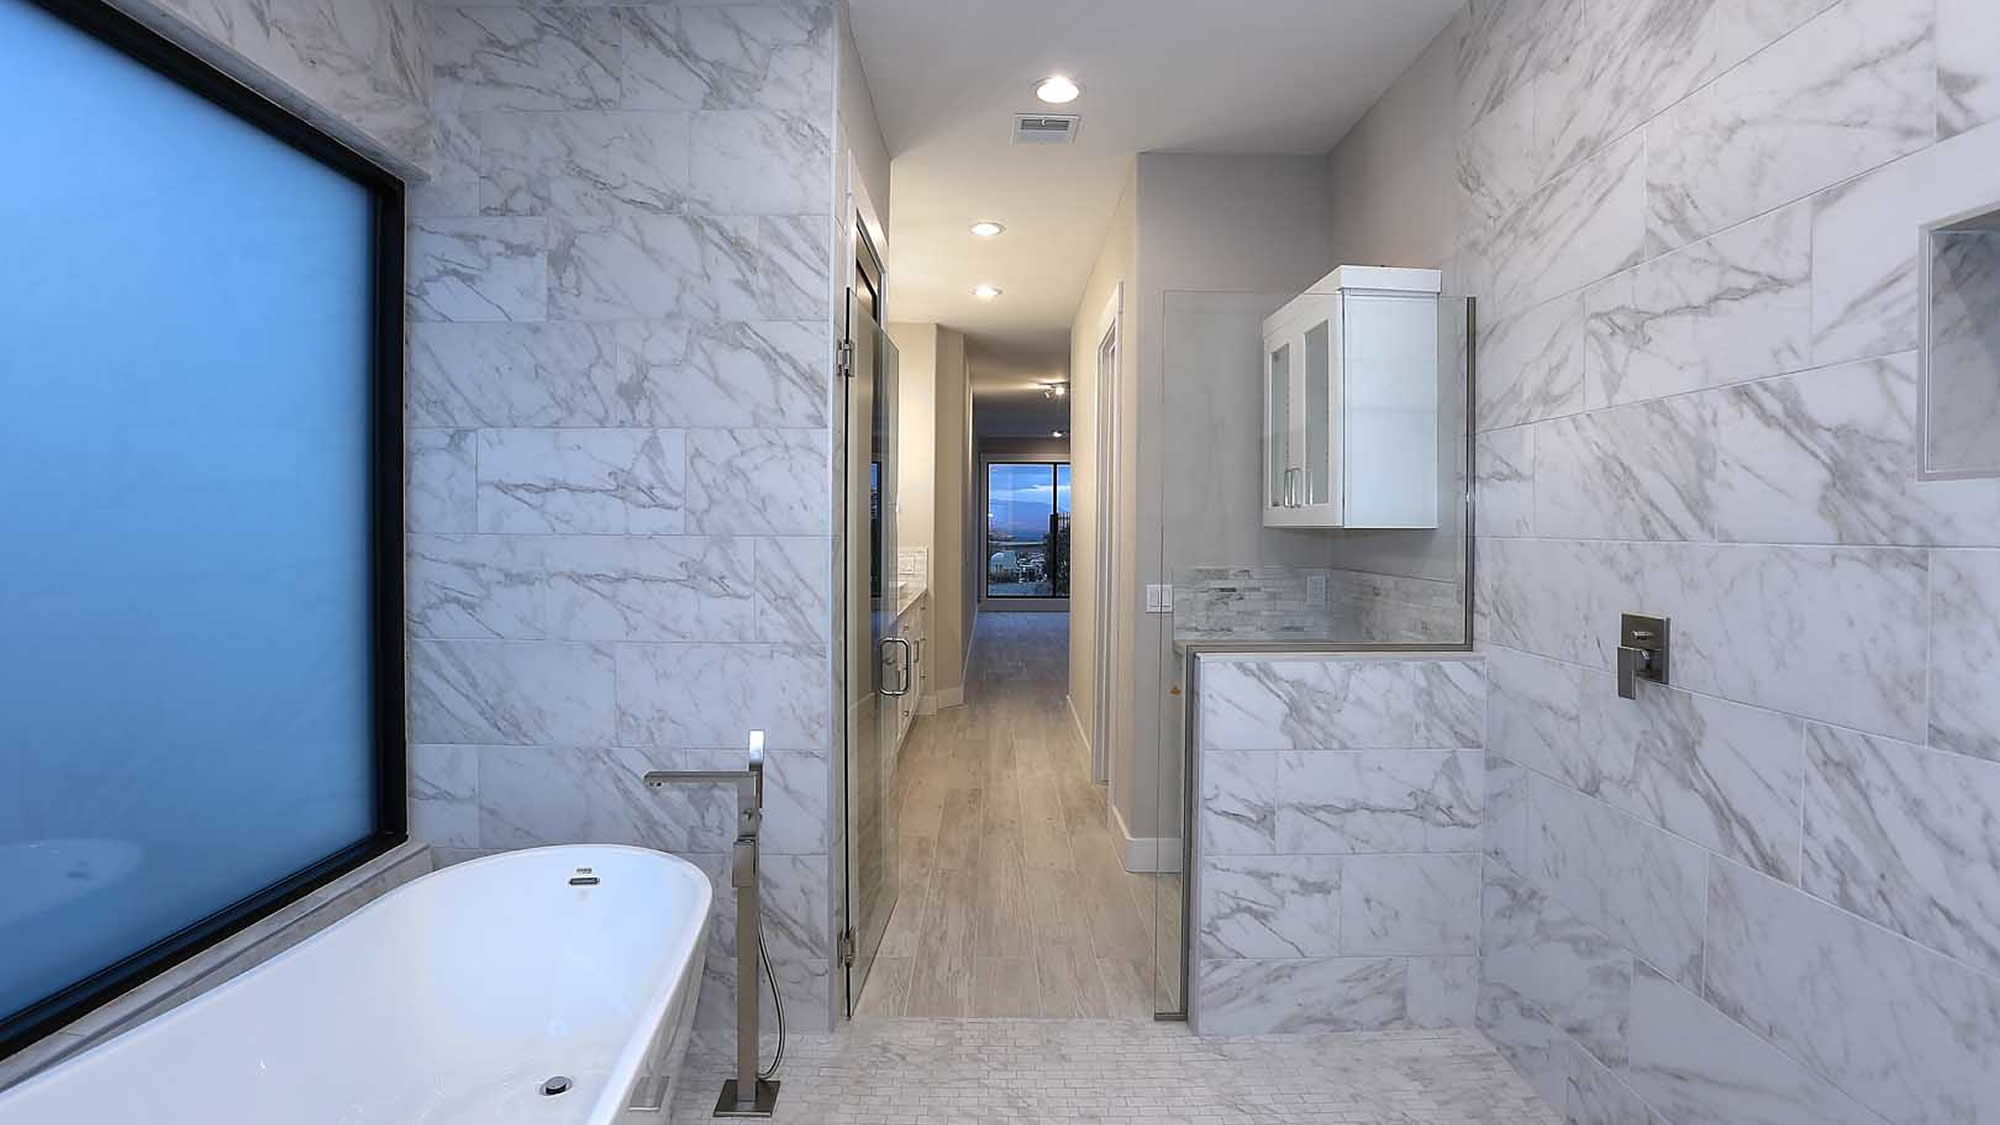 Full Bathroom remodel by HS3 in Scottsdale AZ